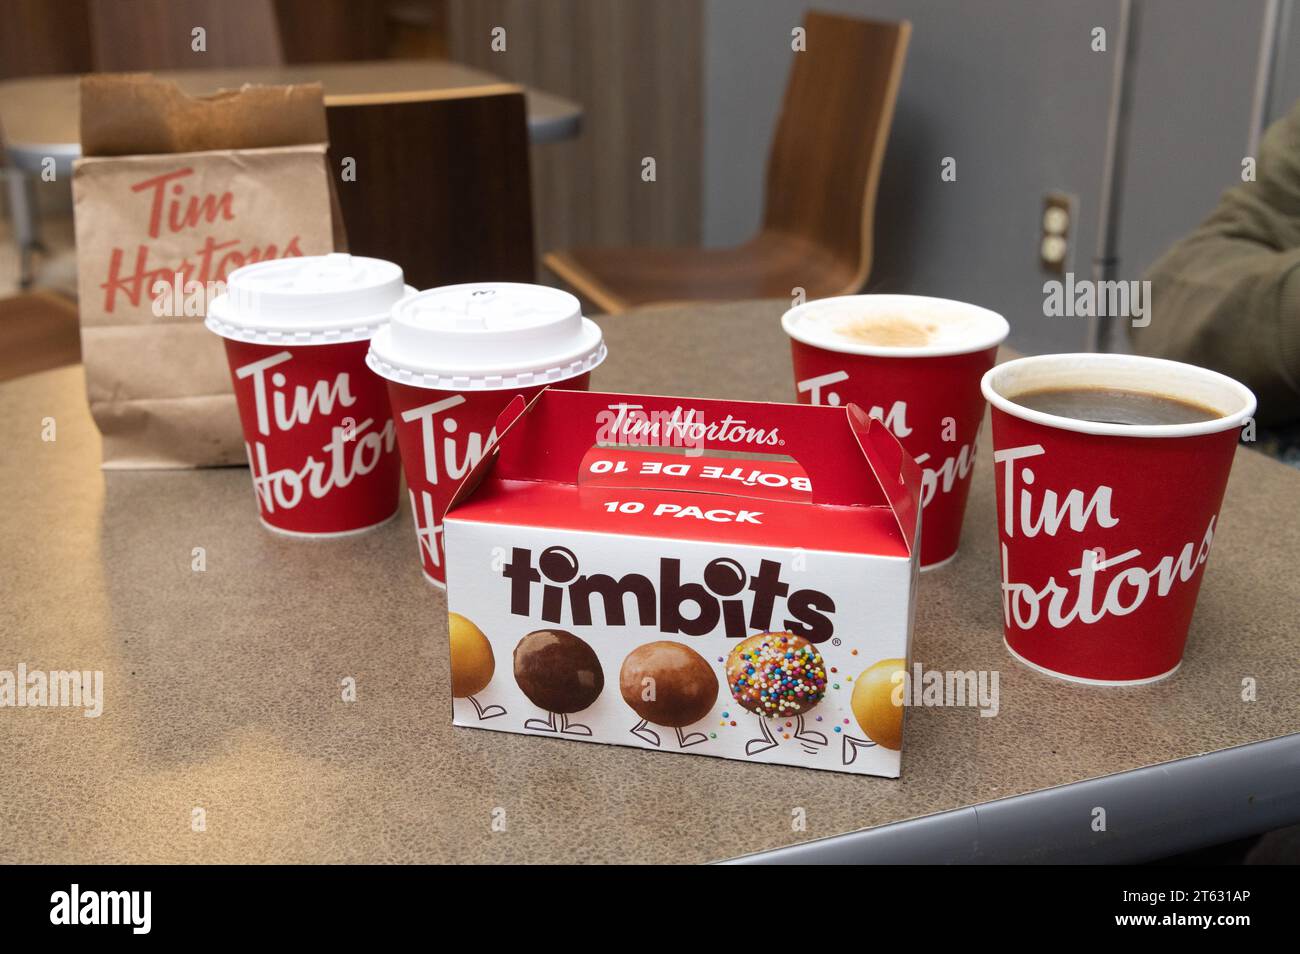 Café Tim Hortons, café et nourriture. Un café-restaurant canadien. Tasses à café et Timbits en gros plan ; Halifax Nouvelle-Écosse Canada. Banque D'Images